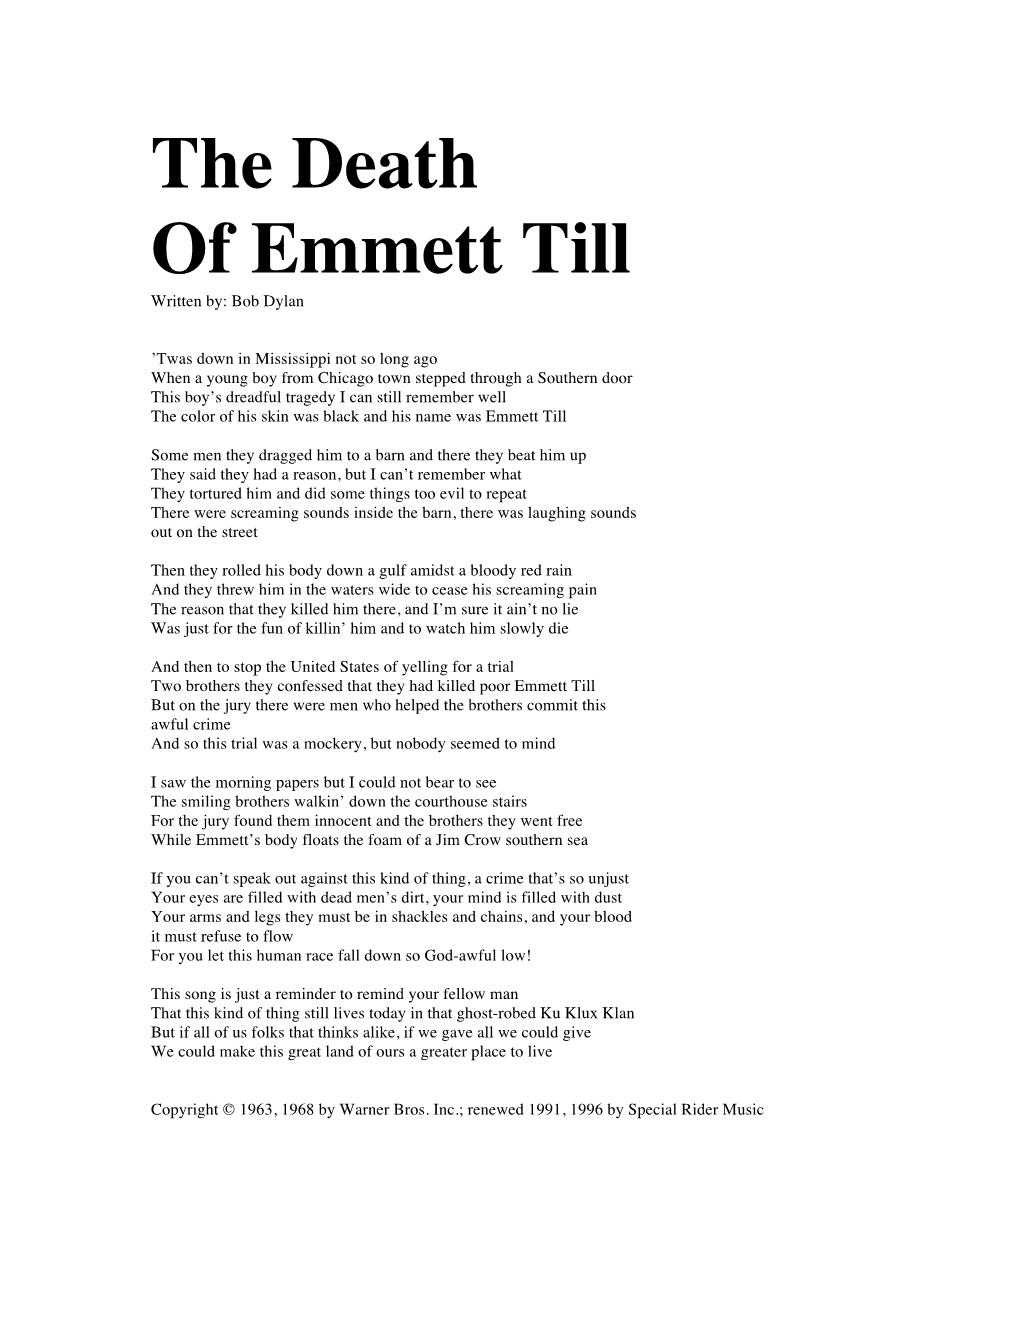 The Death of Emmett Till/Bob Dylan